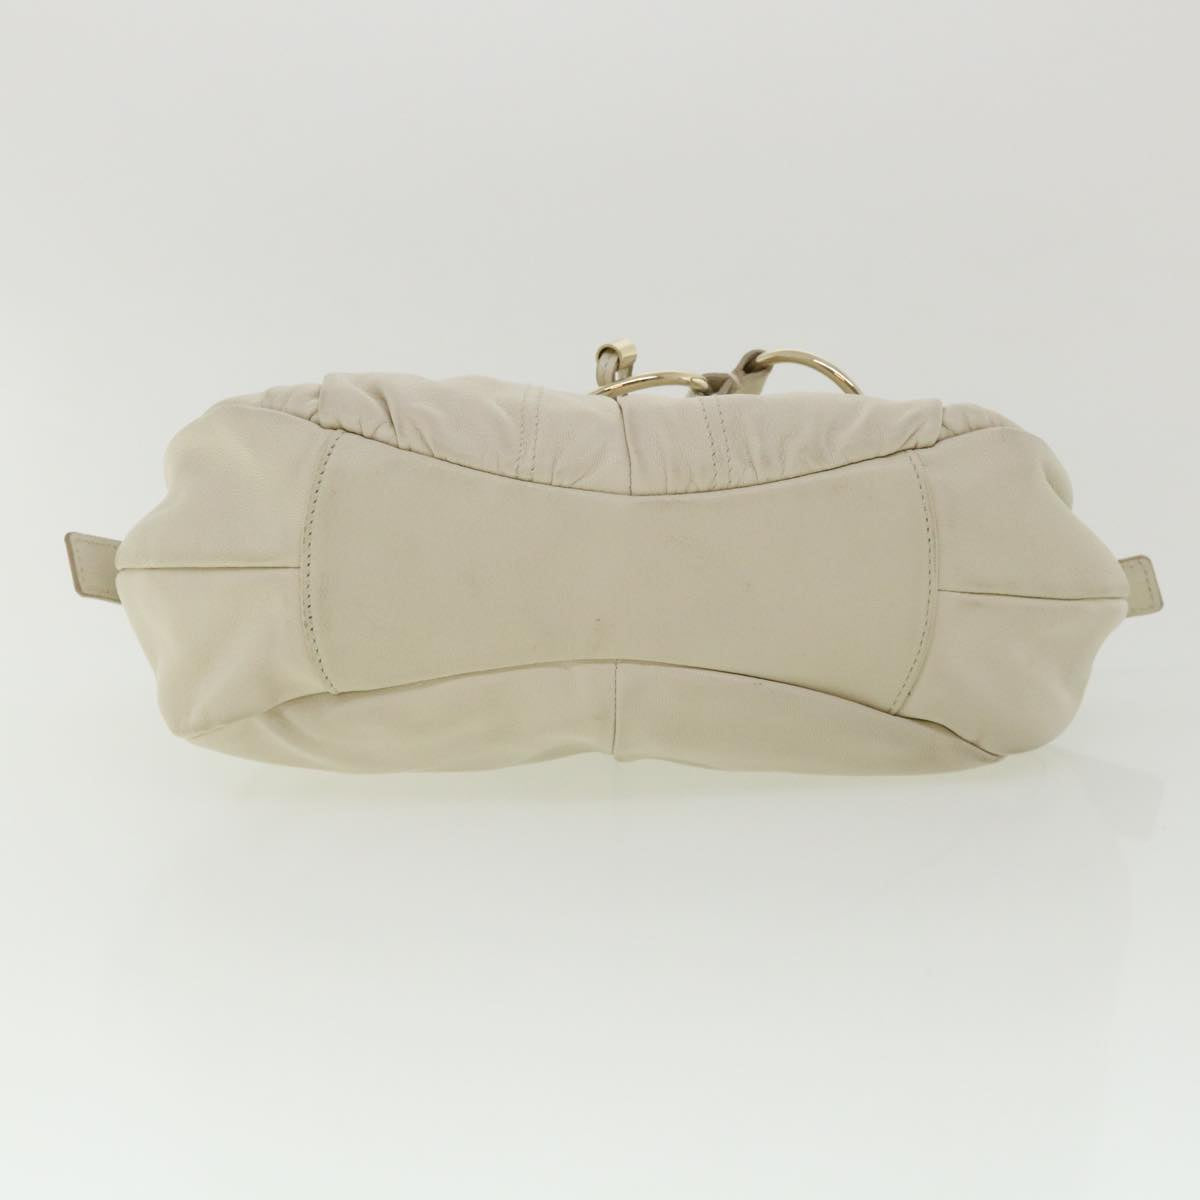 SAINT LAURENT Shoulder Bag Leather White Auth am3557